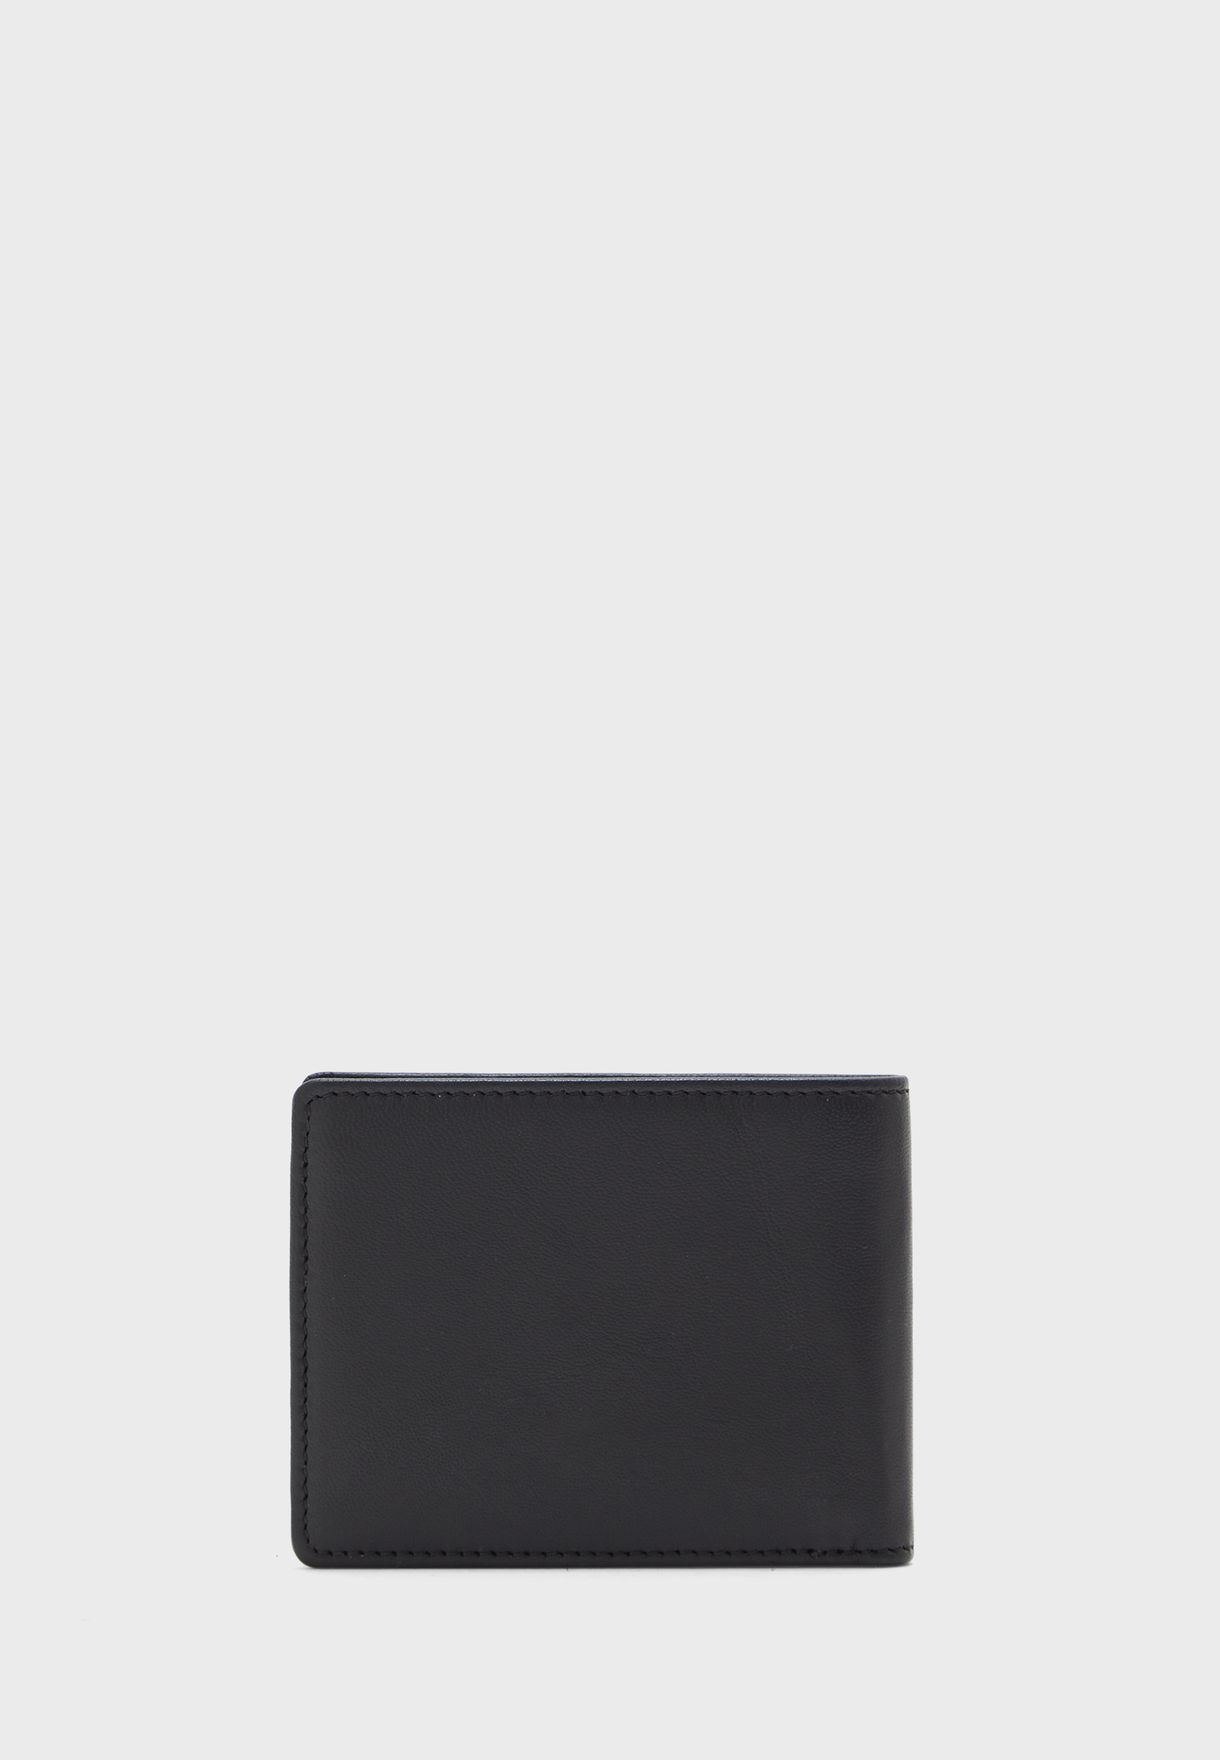 محفظة مطوية مزينة بشعار الماركة